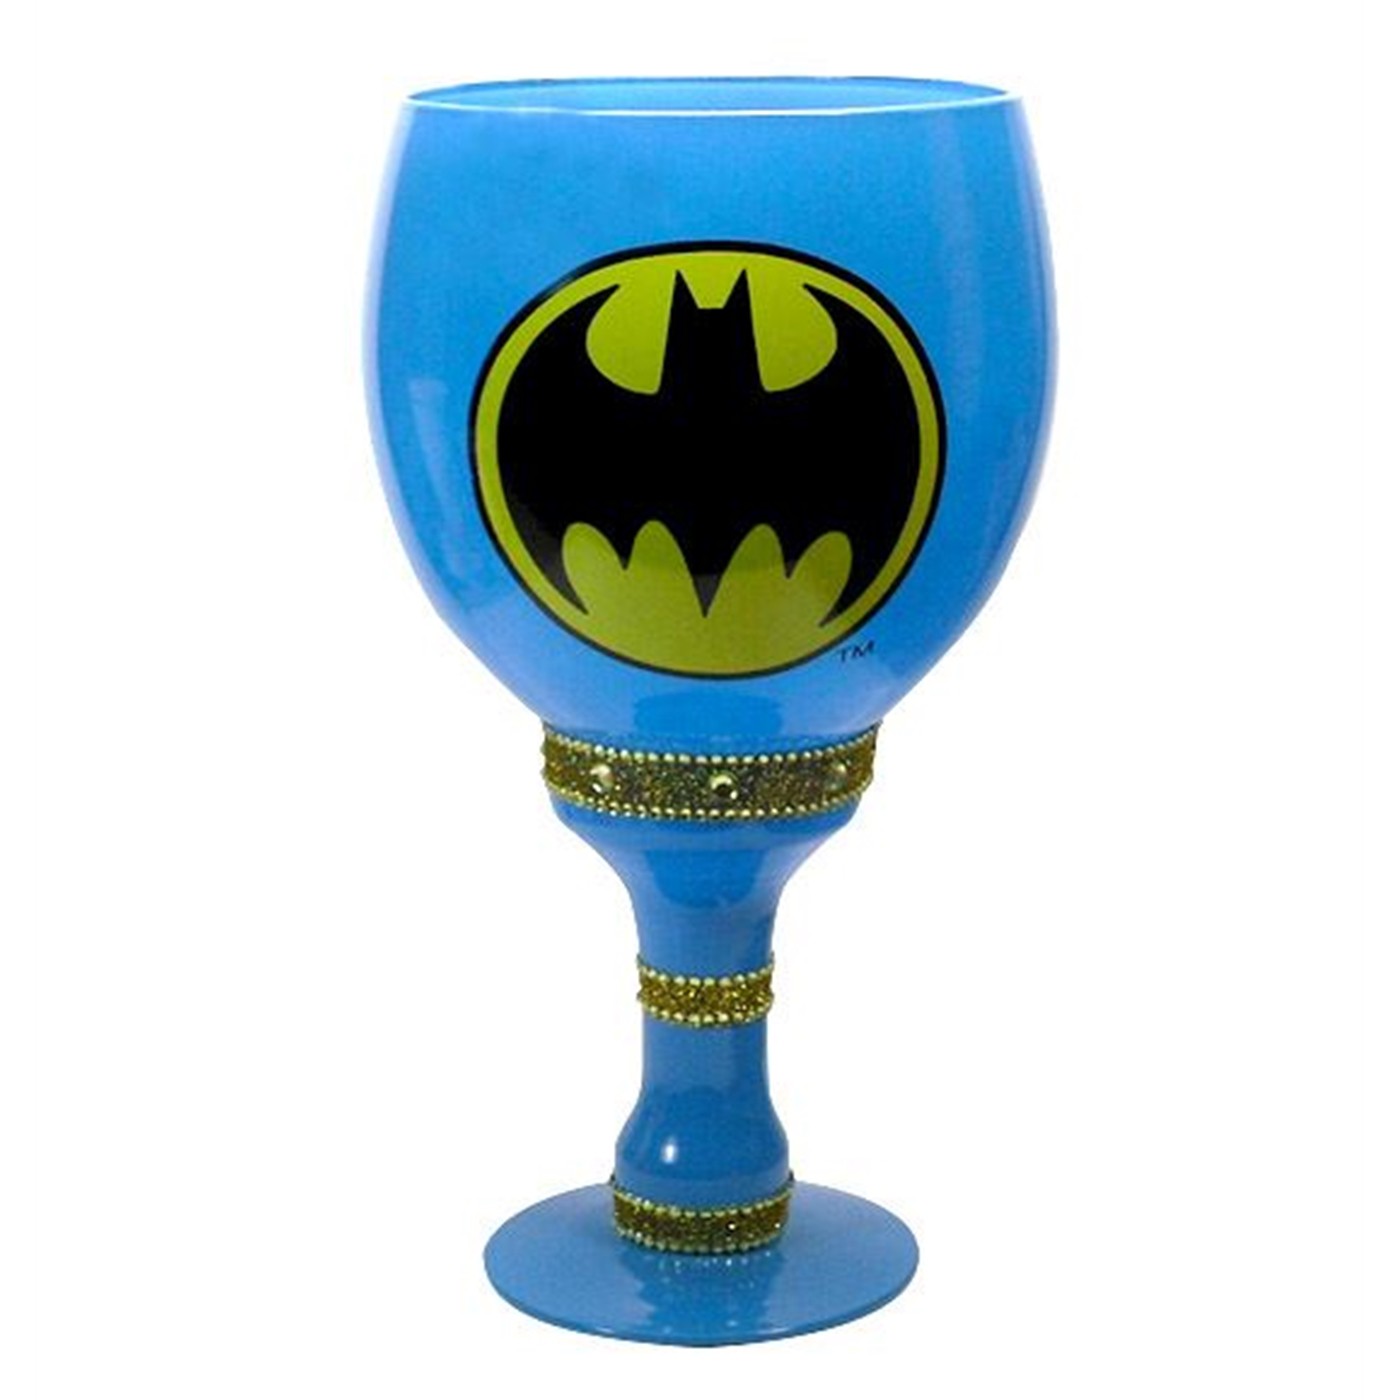 Batman Blue Image and Symbol Goblet